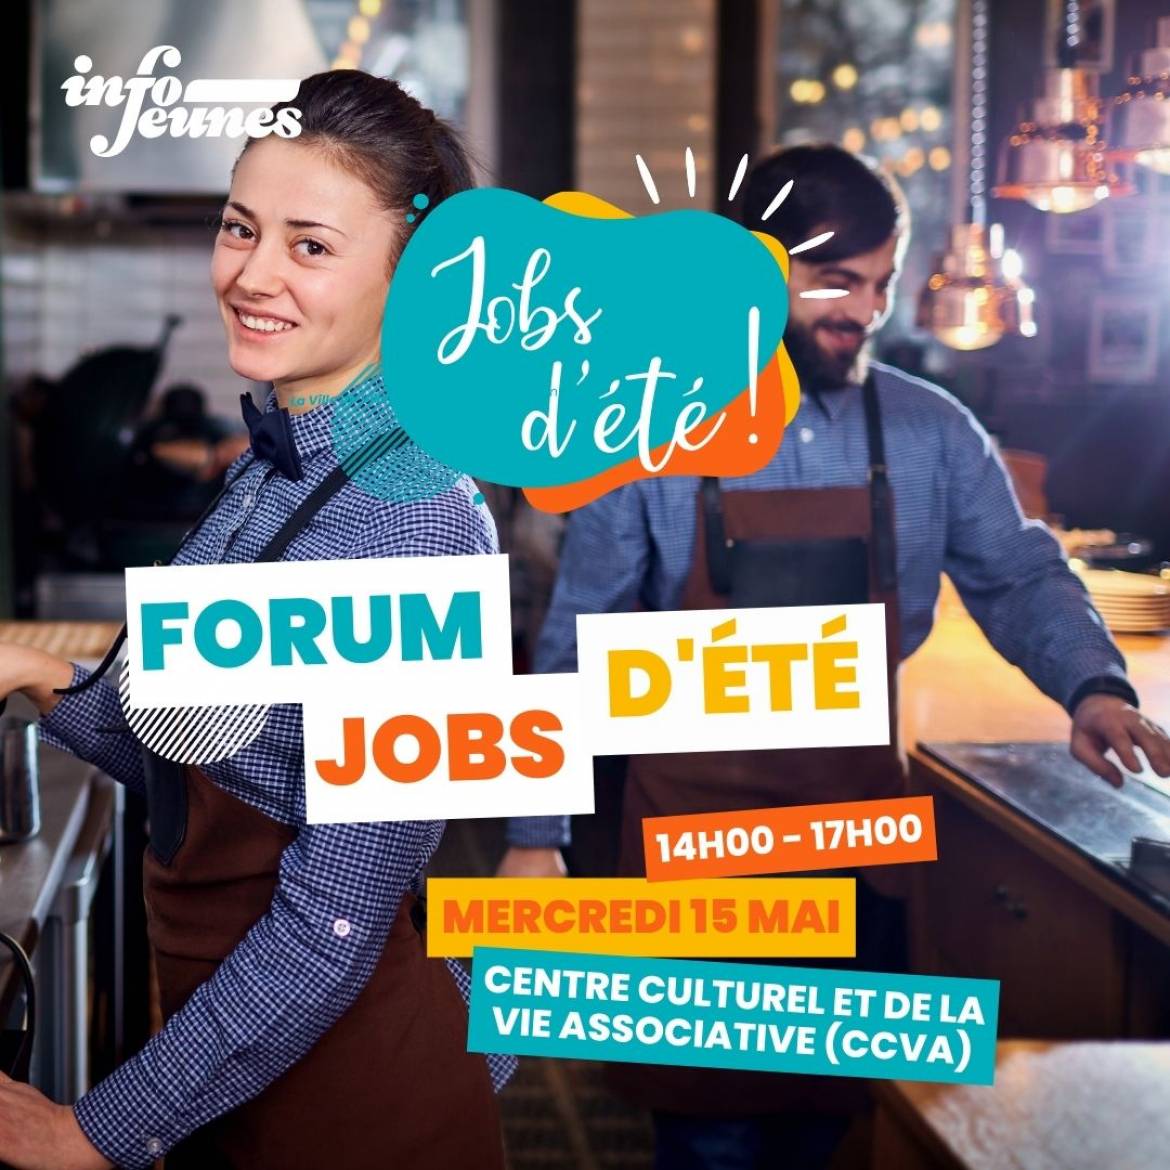 À la recherche d’un job d’été ? Ne manquez pas le Forum Jobs d’été de Villeurbanne !